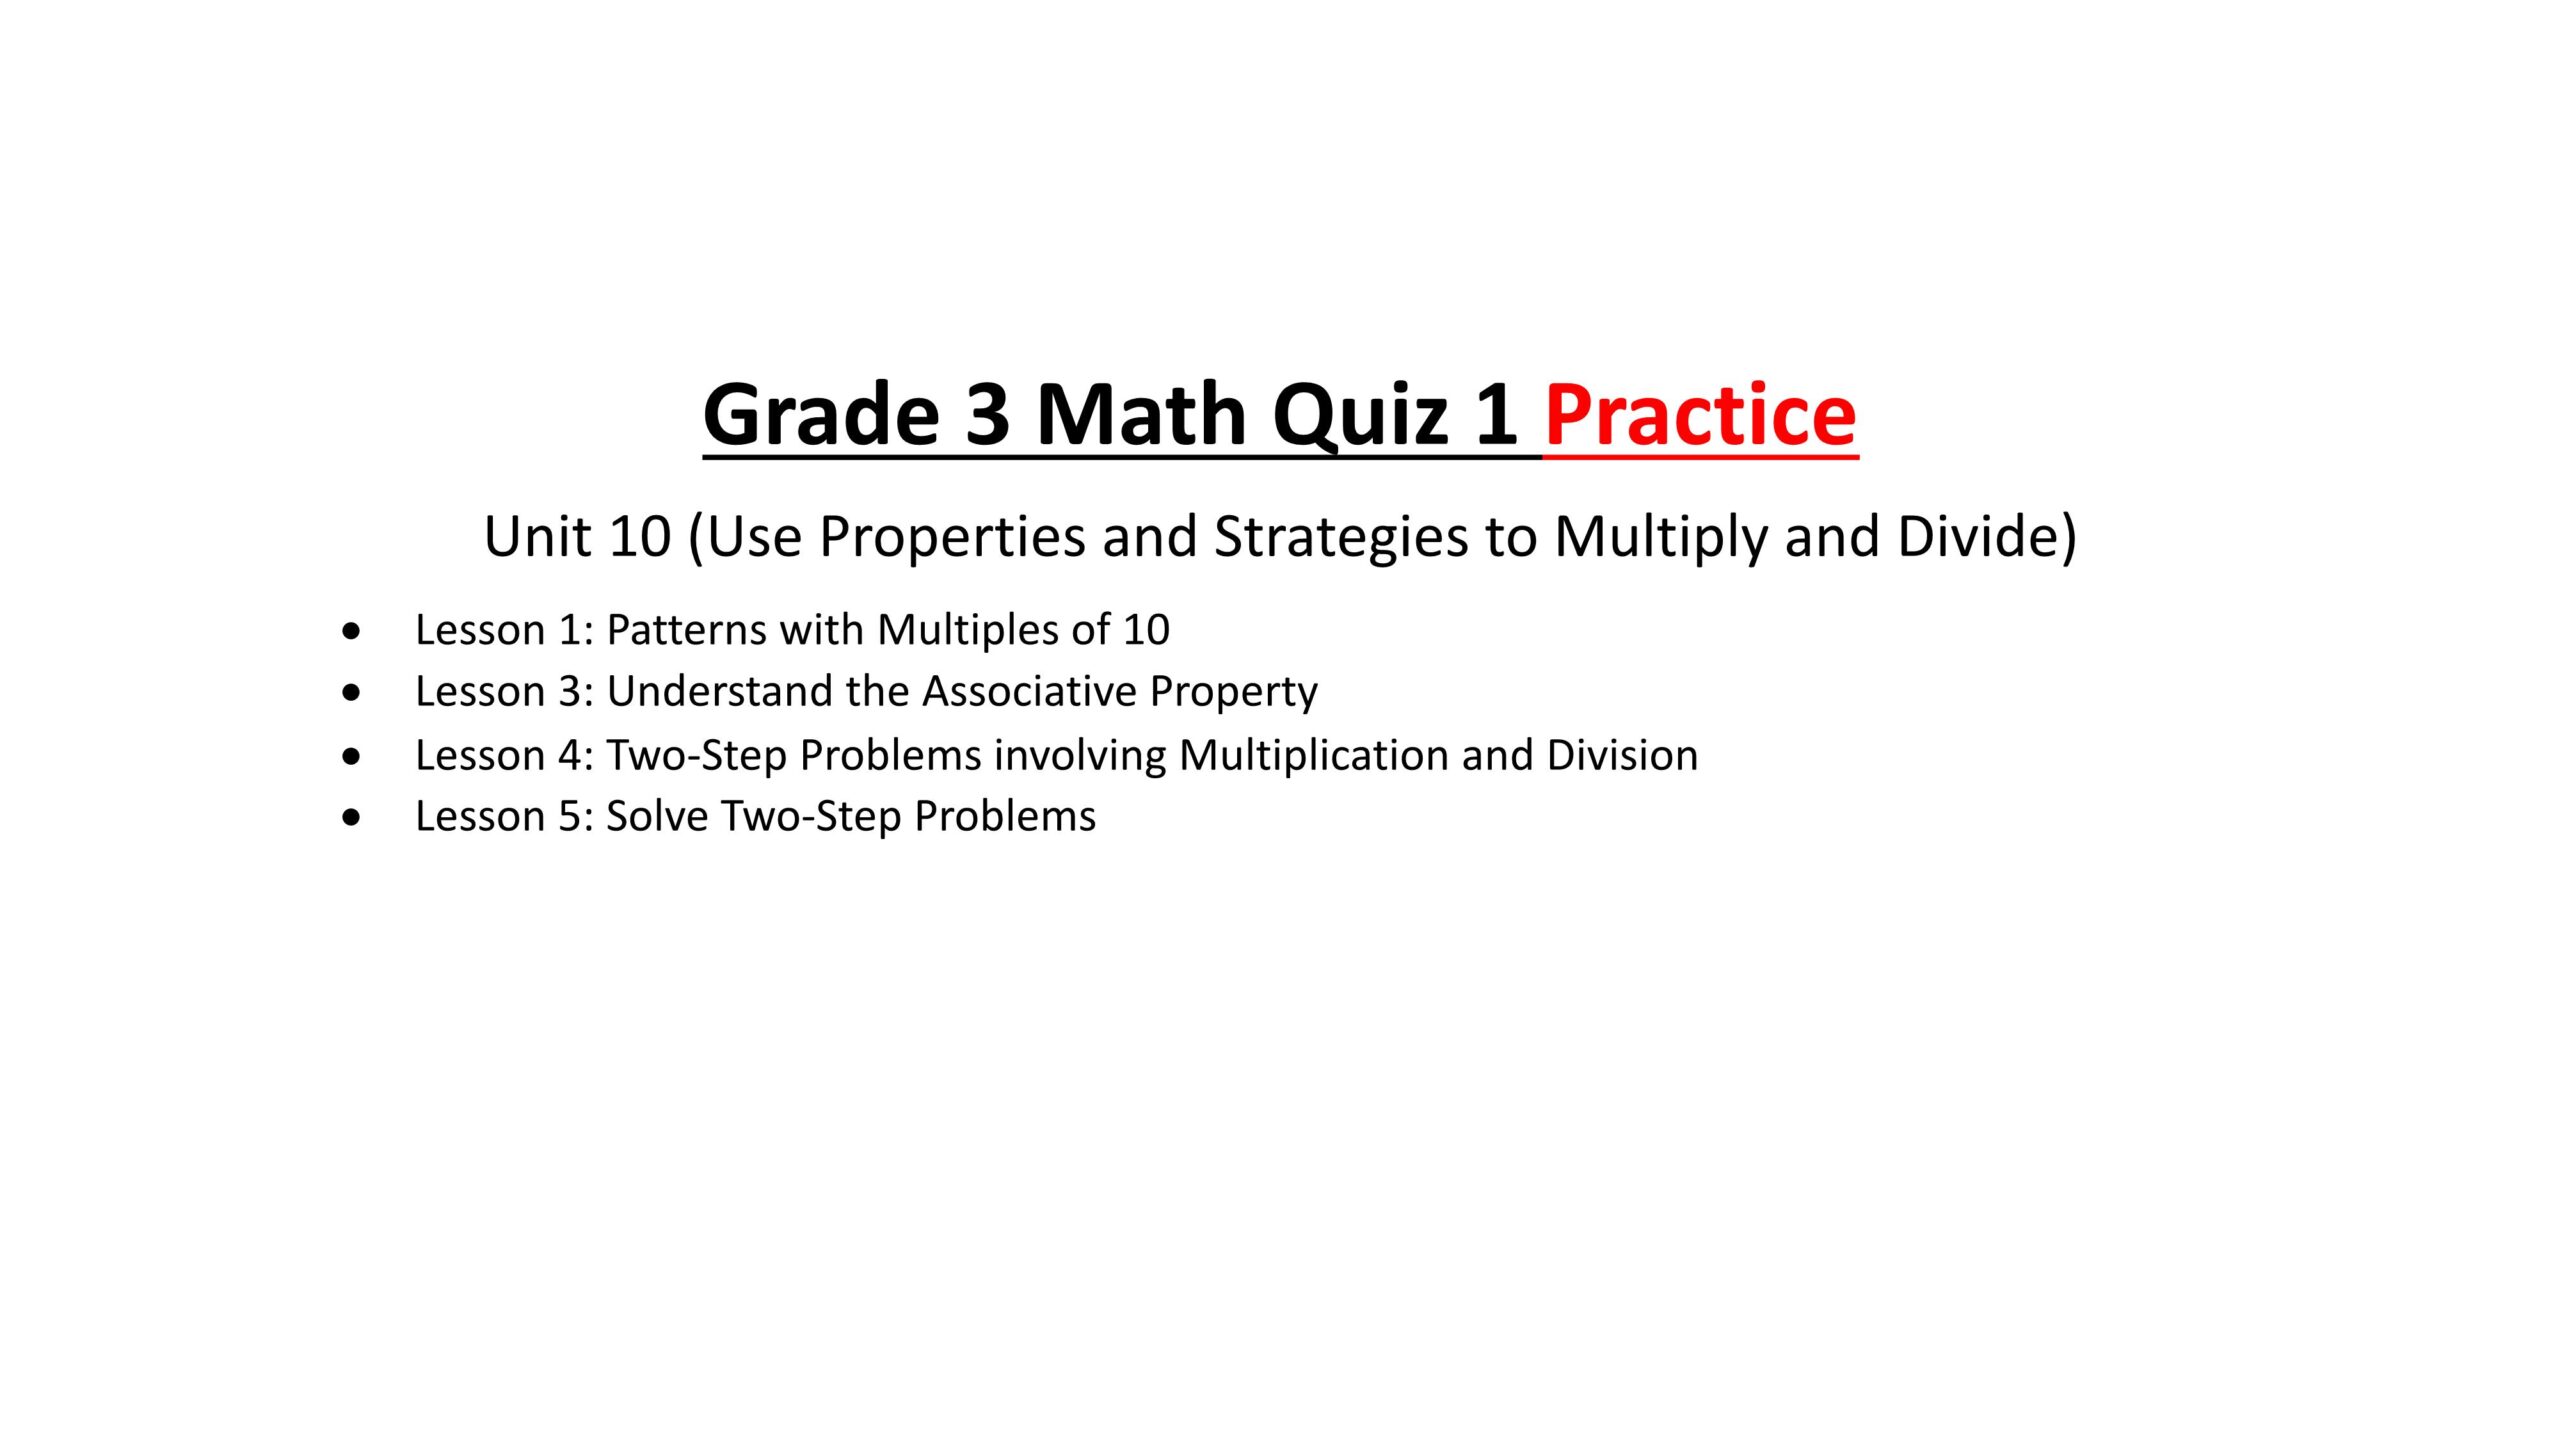 حل Quiz 1 Practice الرياضيات المتكاملة الصف الثالث